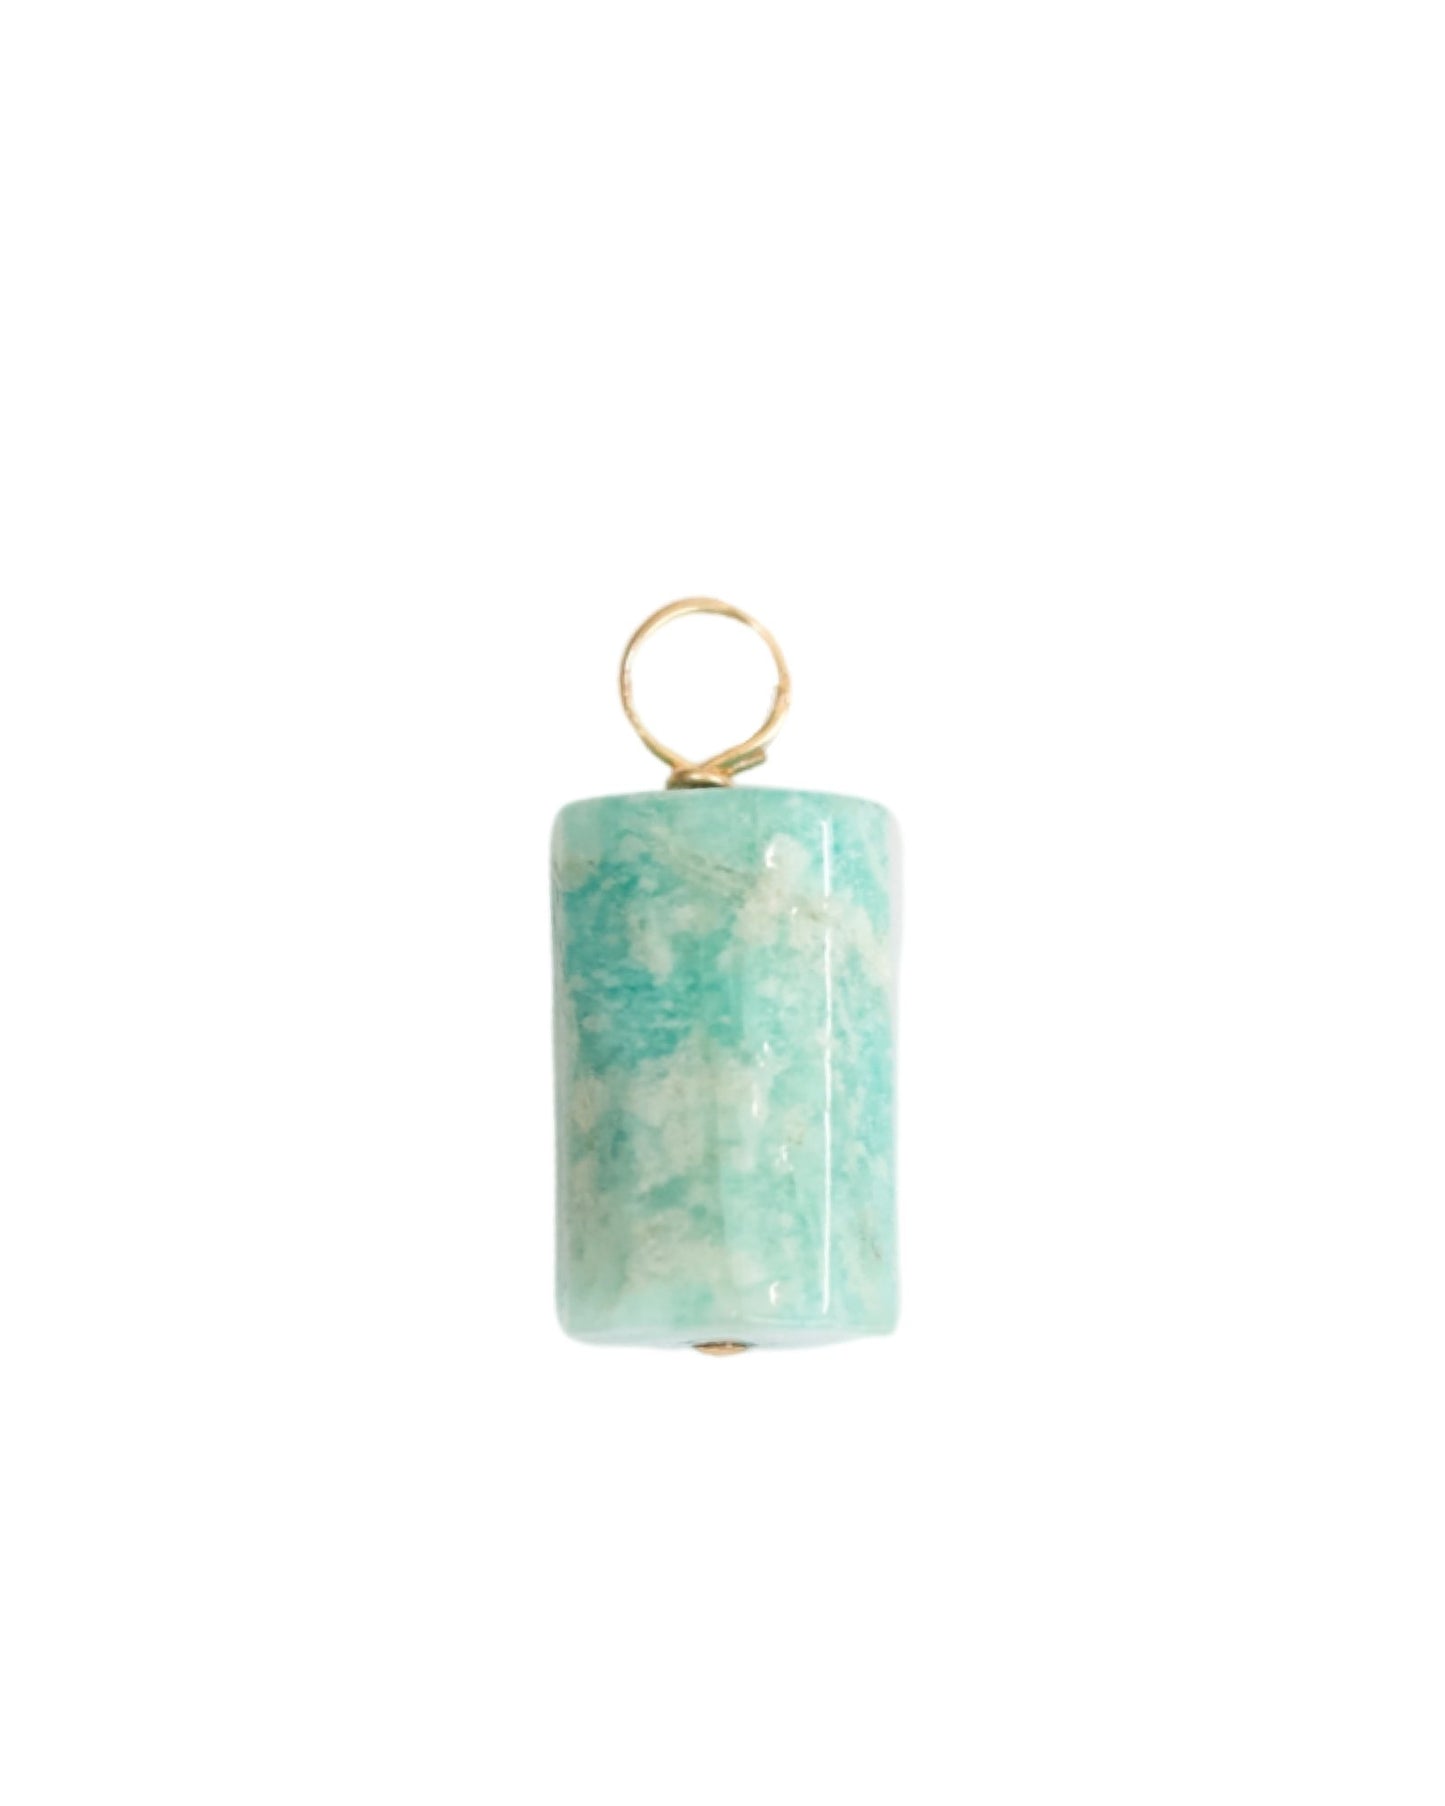 Amazonite Stone Pendant - DE.FINE Collection Jewelry